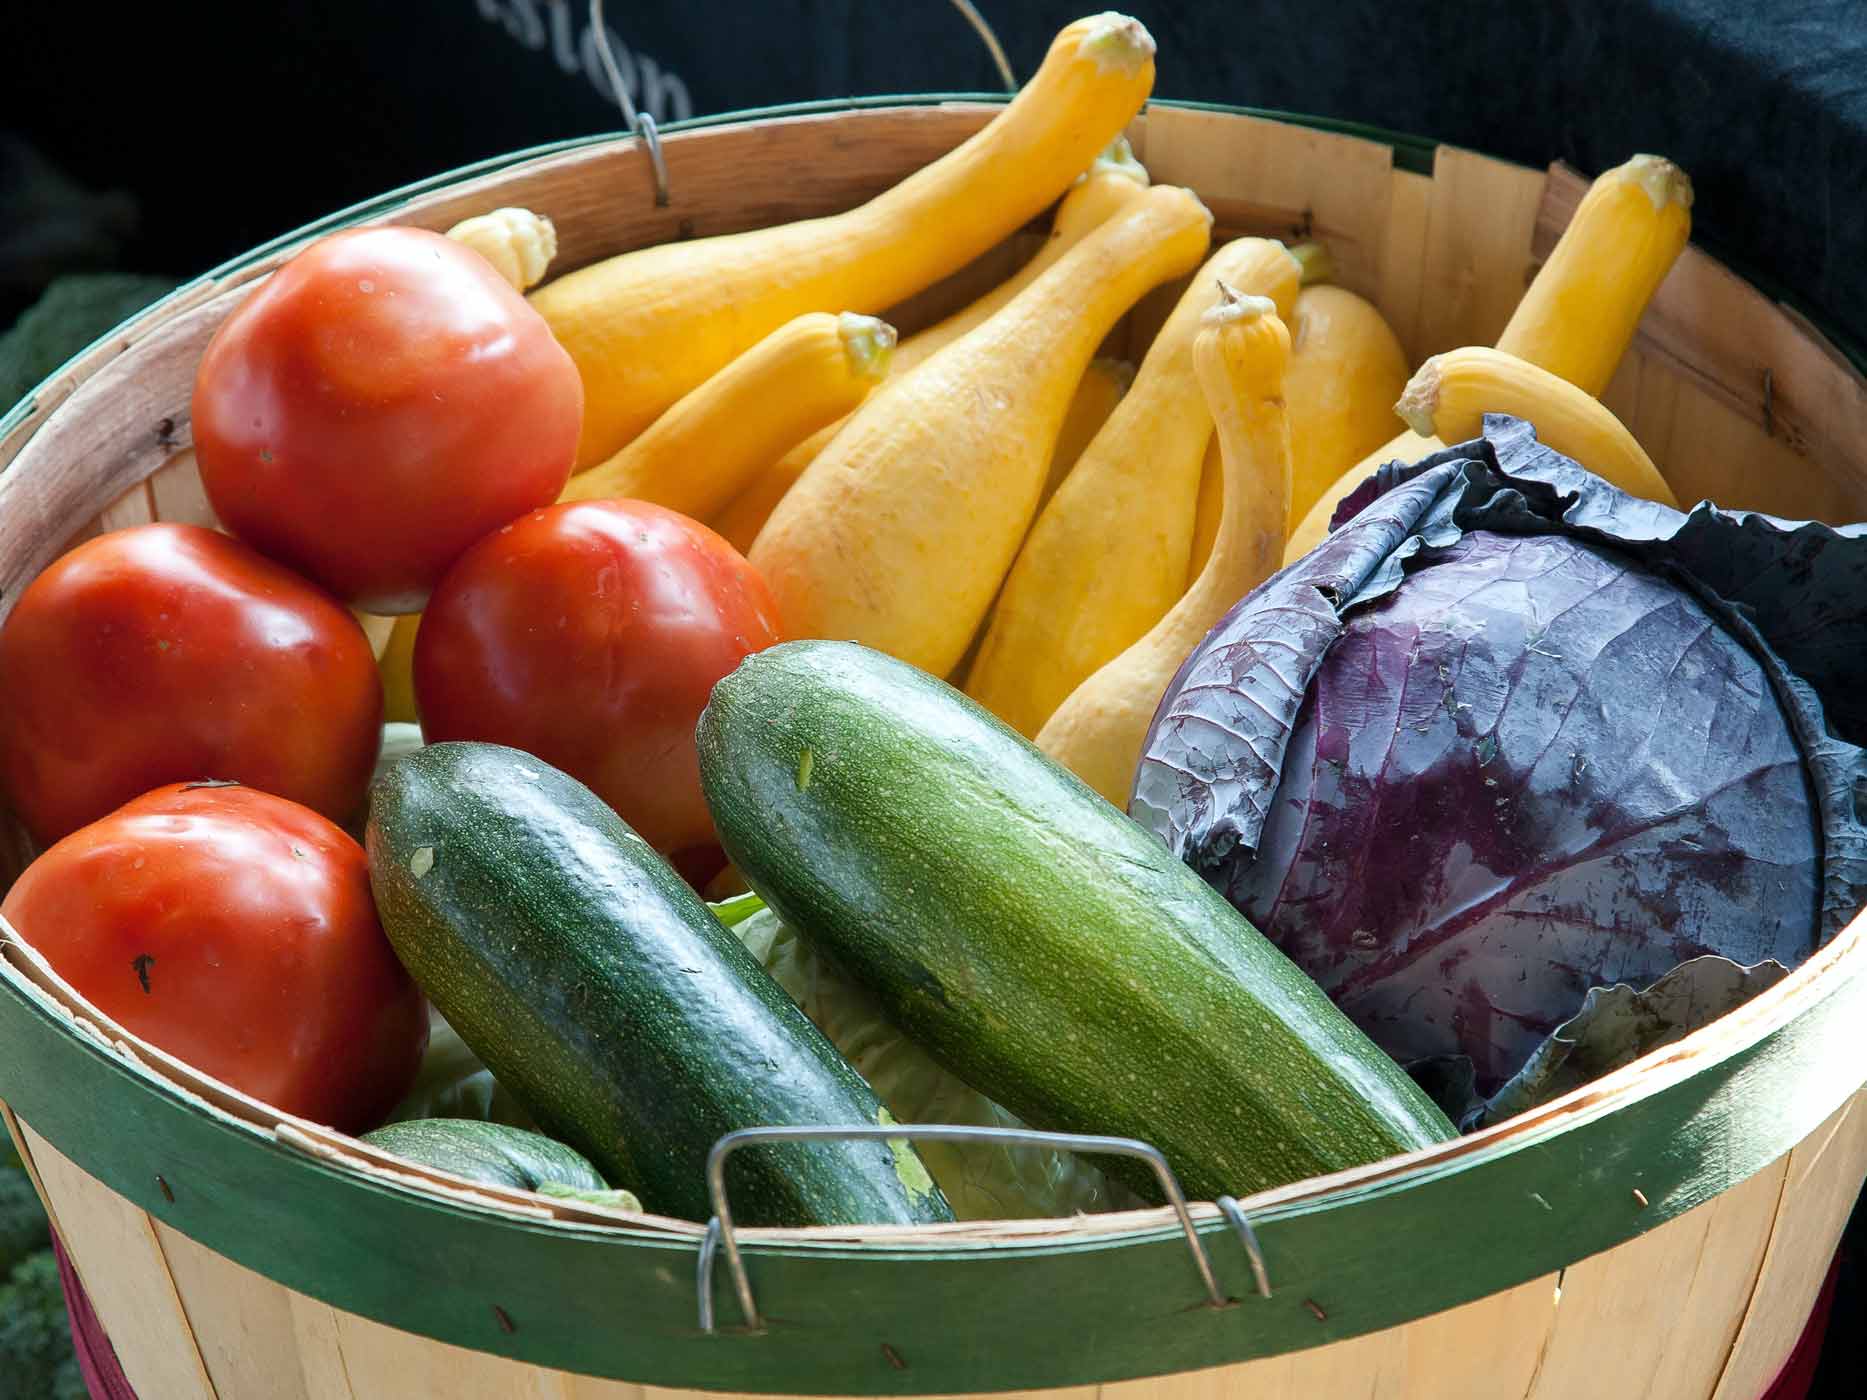 Unverpacktes Obst und Gemüse in einem Korb